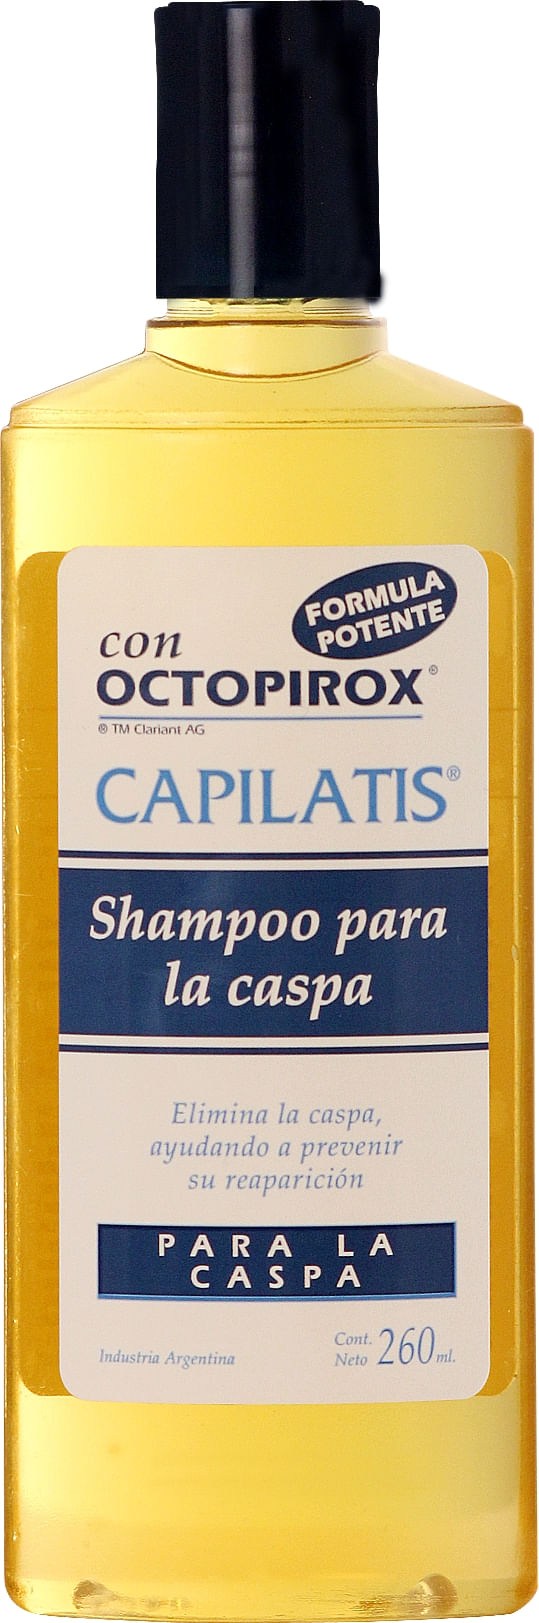 Shampoo-anticaspa-x-260-ml